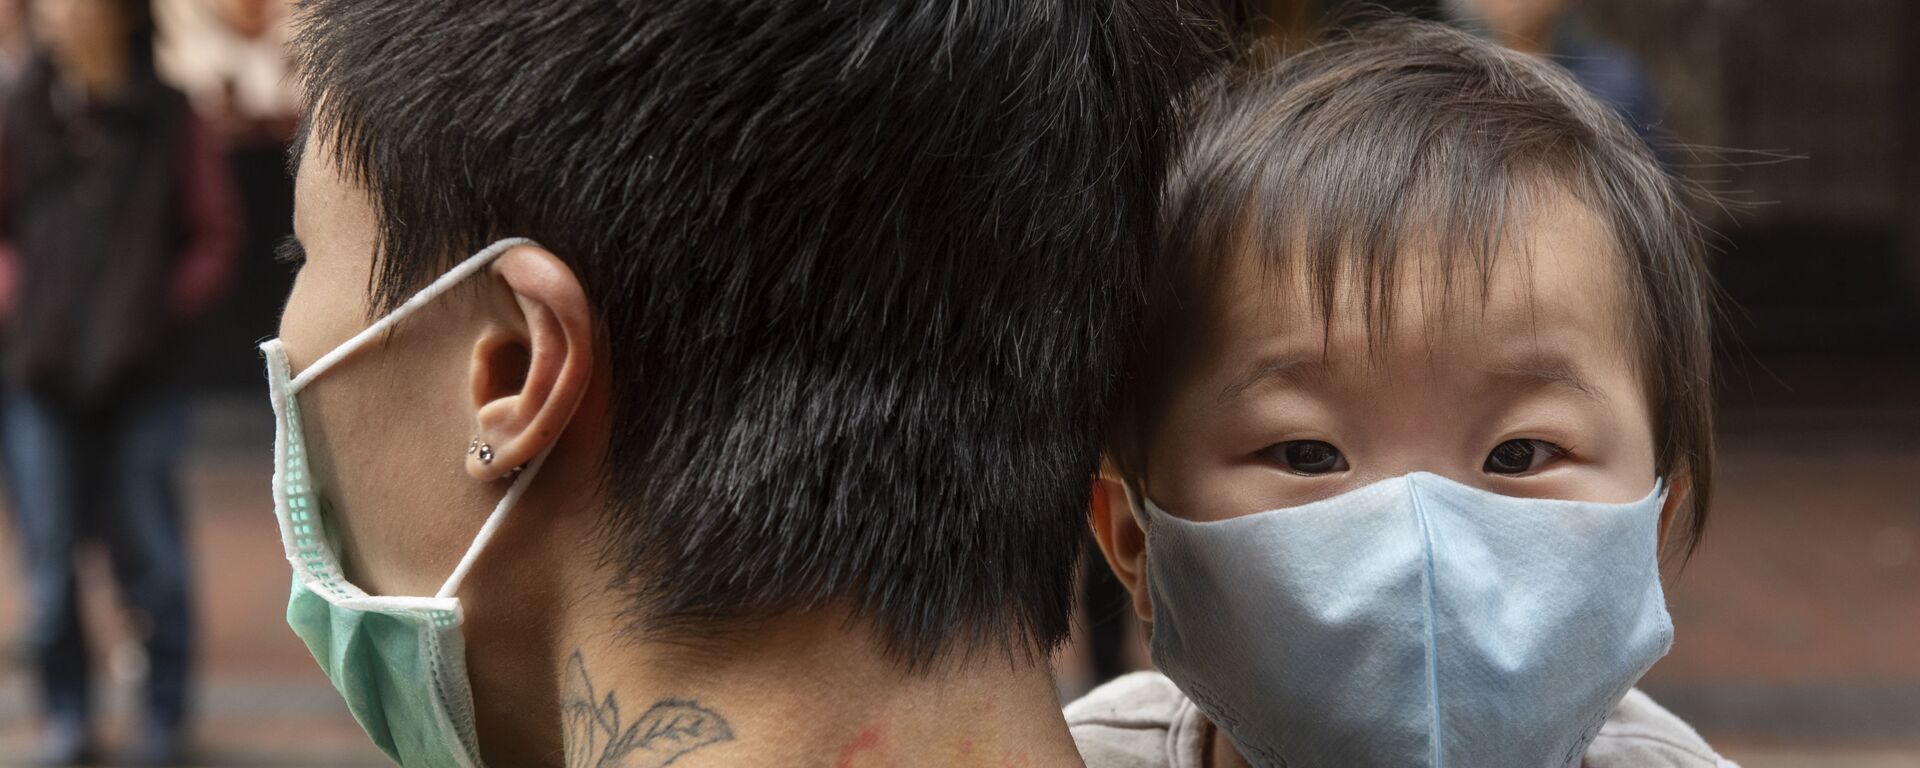 Ребенок в защитной маске на руках отца на одной из улиц в Гонконге - Sputnik Արմենիա, 1920, 25.05.2020